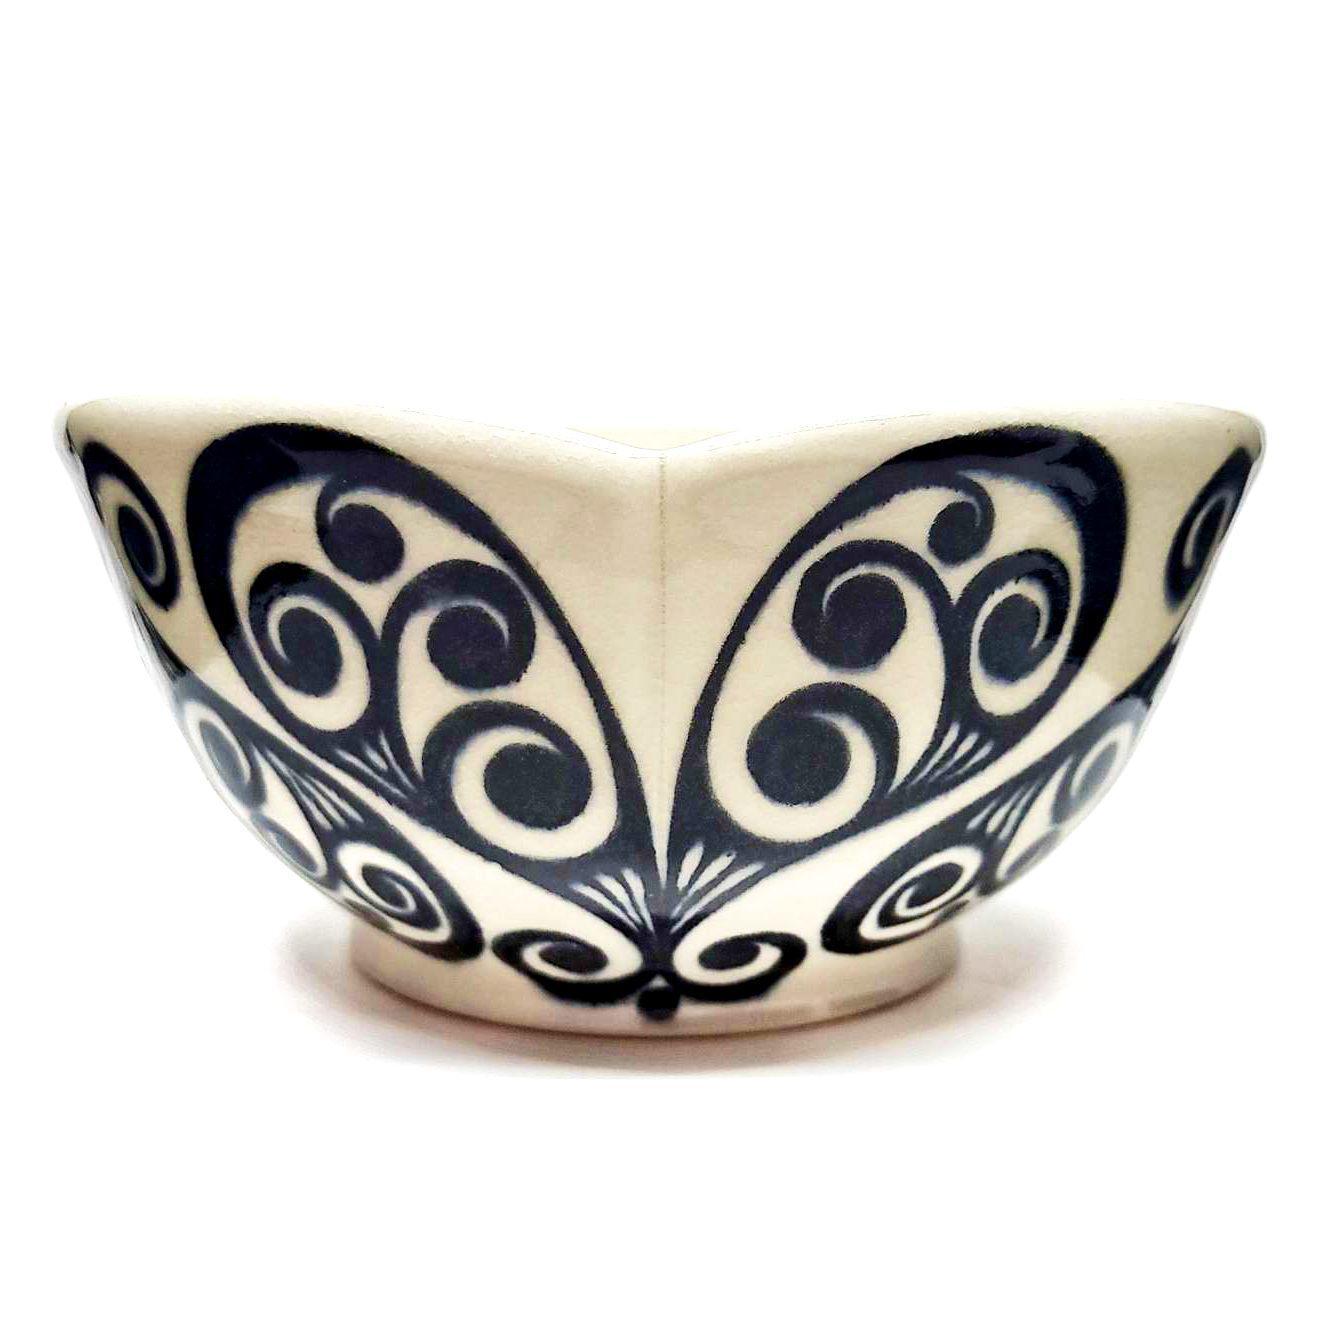 Bowl - Medium in Monochrome Floret Hearts by Britt Dietrich Ceramics